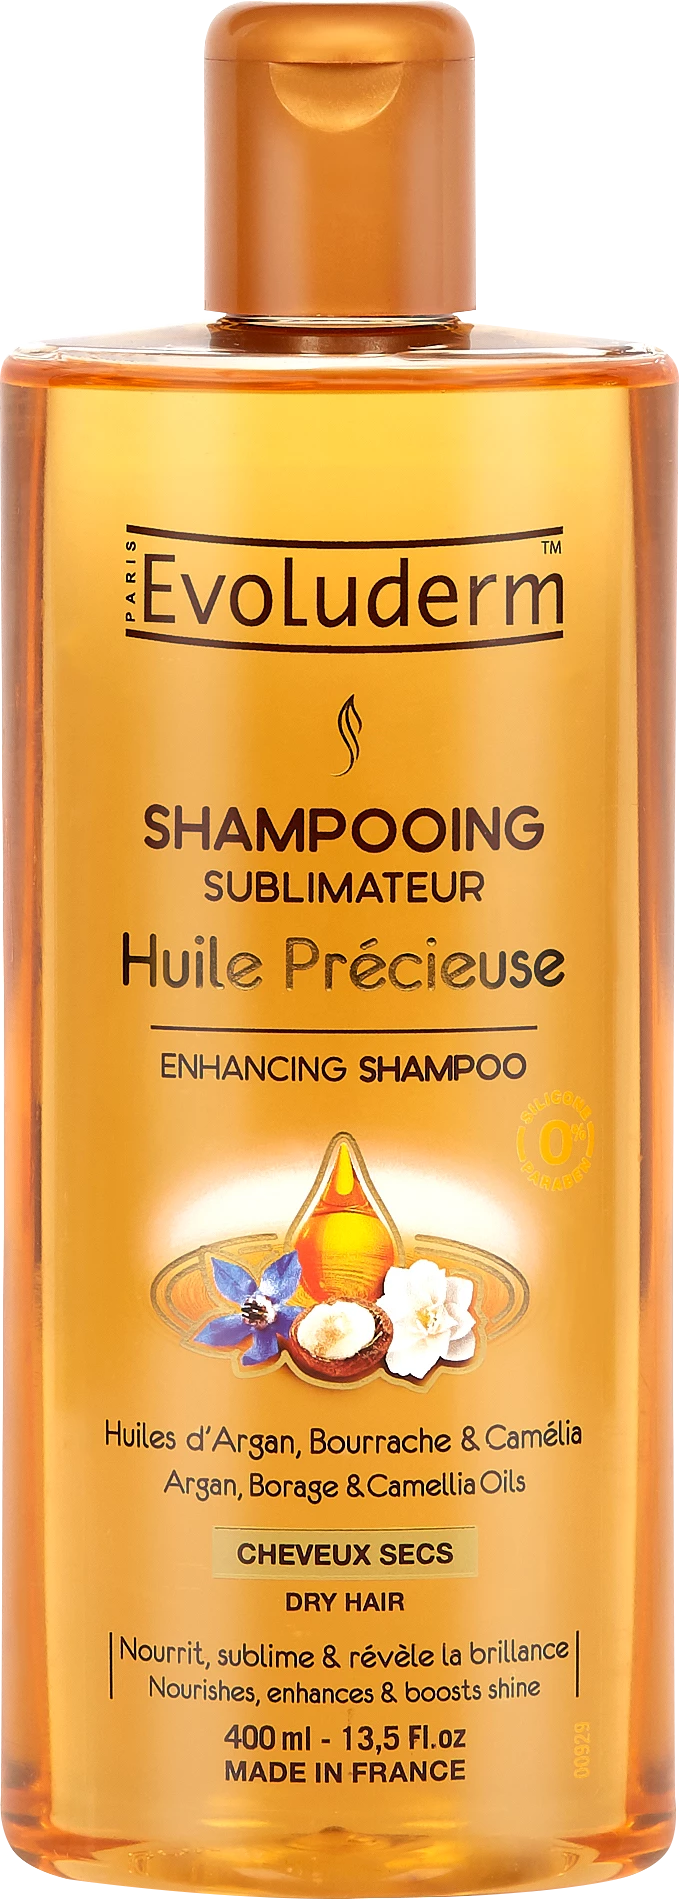 Precious Oil-shampoo, 400 ml - EVOLUDERM